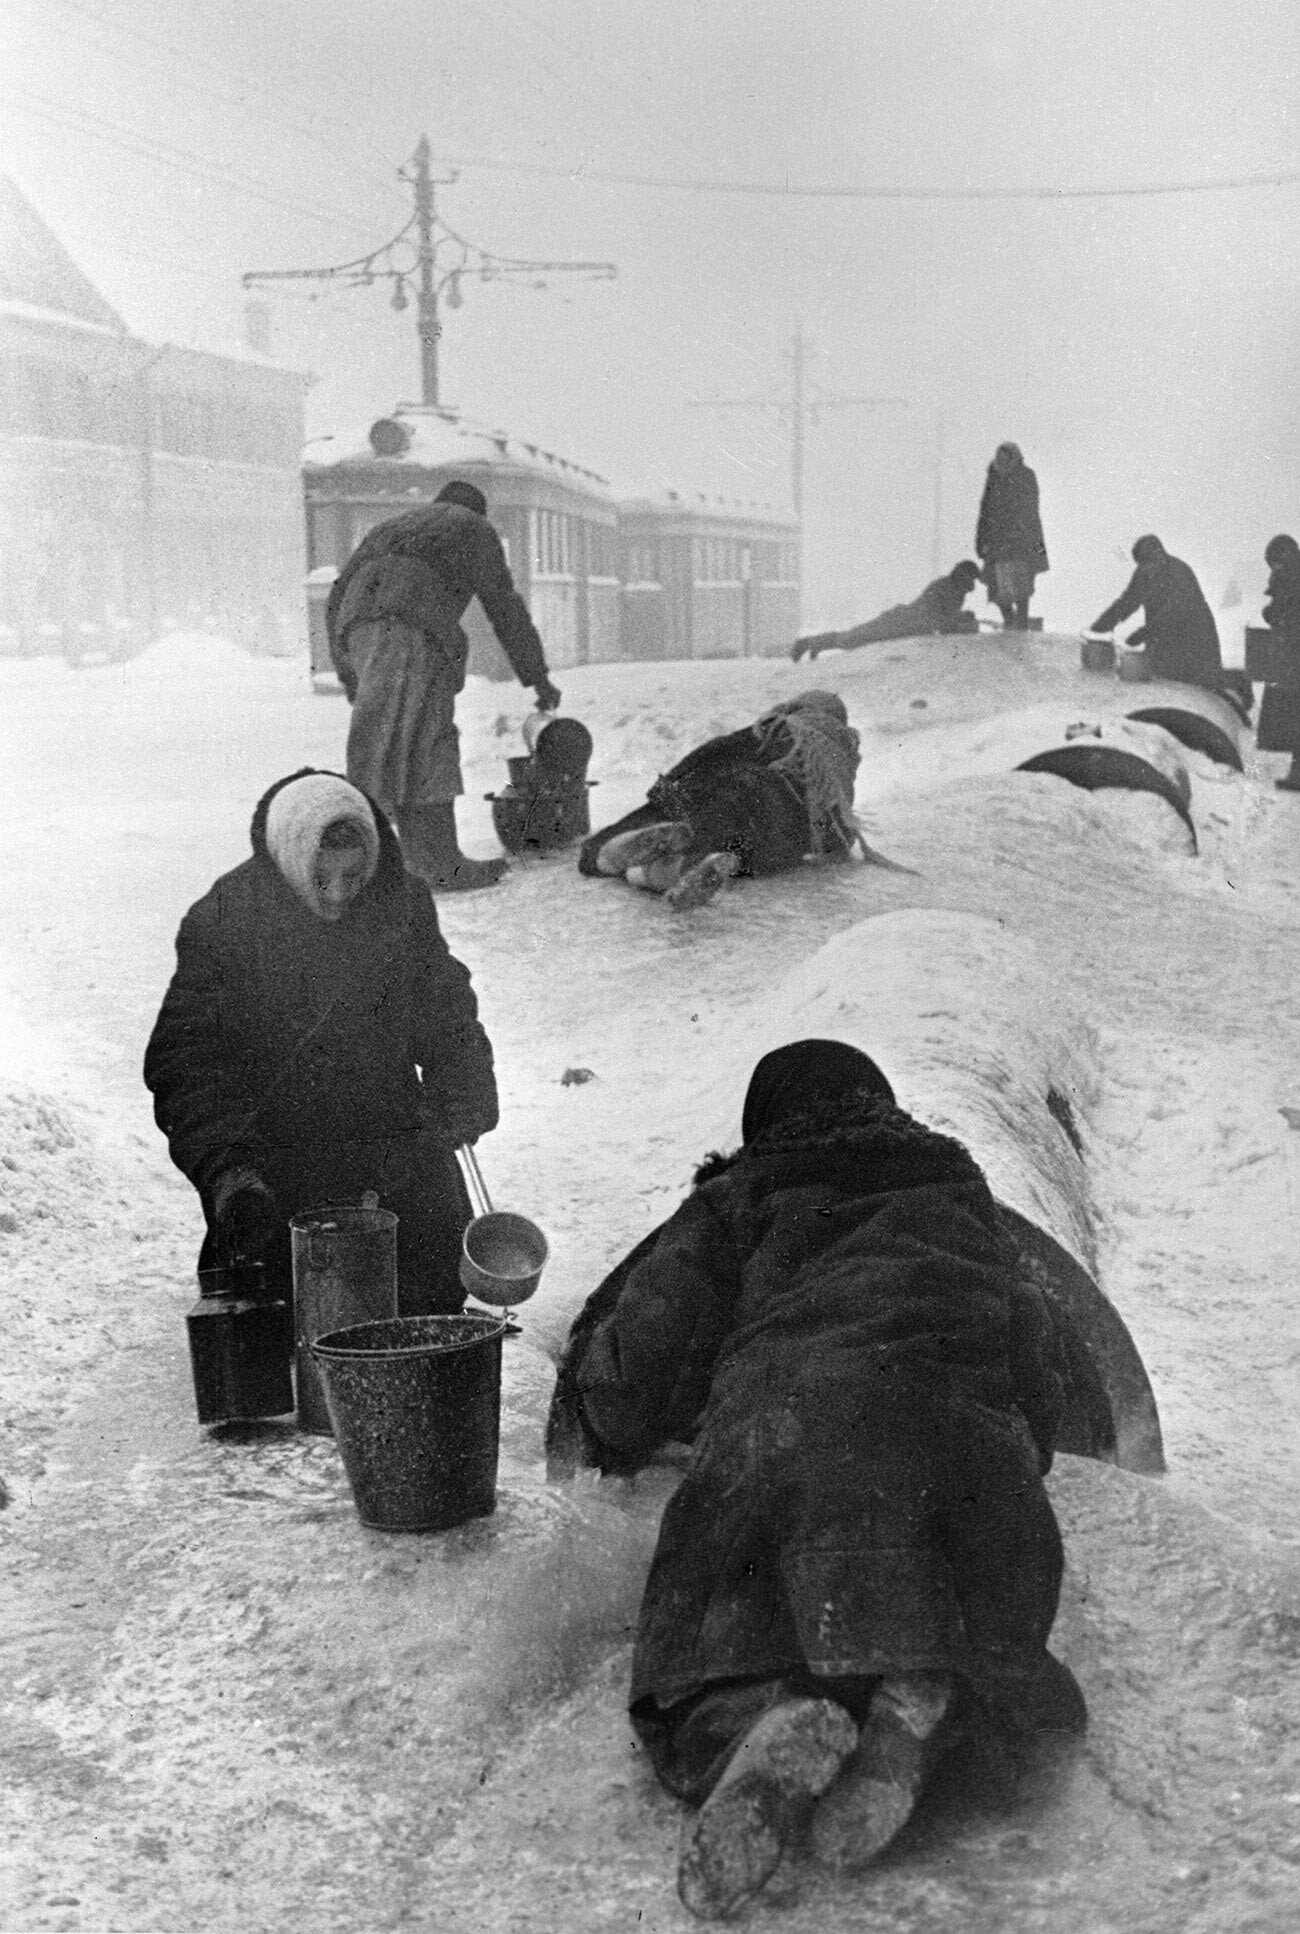 Gli abitanti della Leningrado assediata raccolgono l'acqua da un tubo rotto su una strada ghiacciata